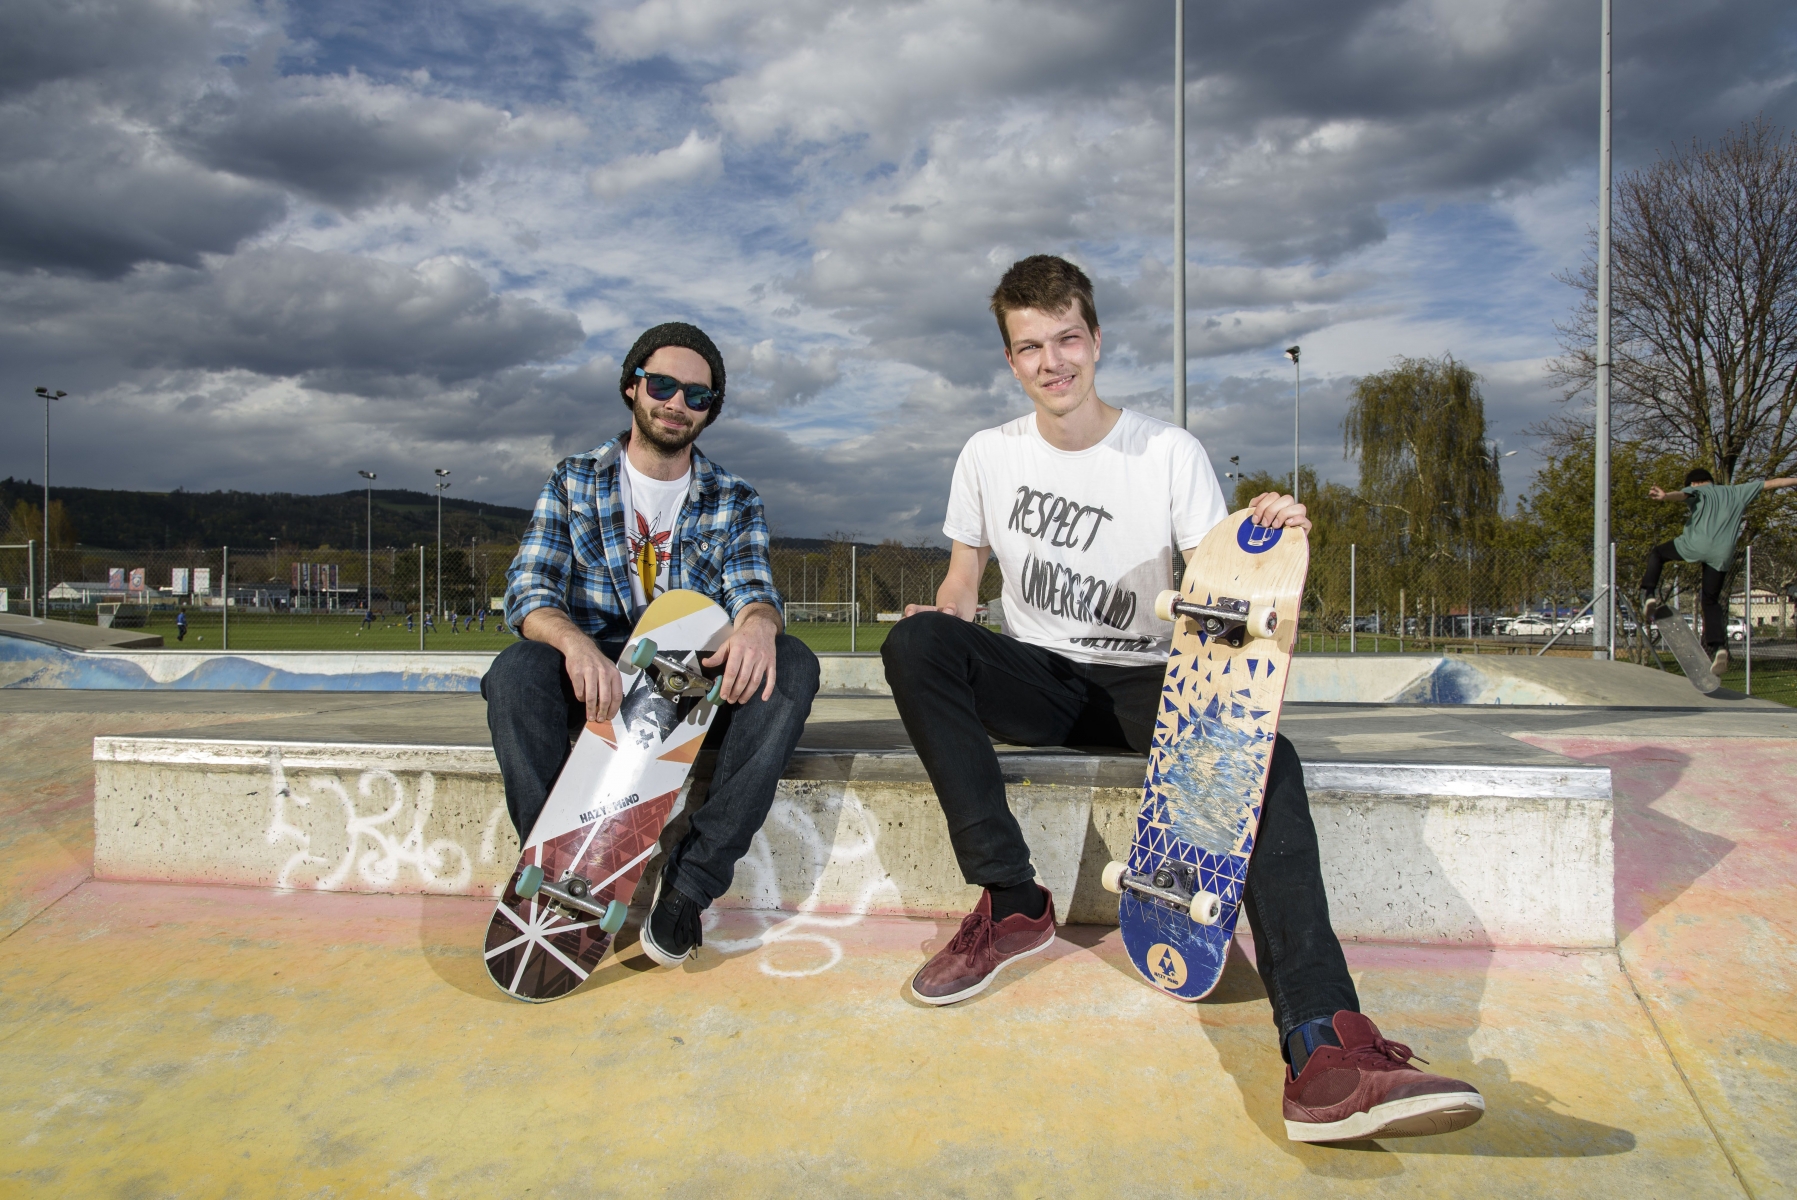 Gland, mardi 12.04.2016, skatepark, portrait de l'entreprise Hazy Minds qui fabrique et vend des skateboards et des t-shirts de skate, de gauche à droite : Nicolas Zbinden et Florian Schaeren, photos Cédric Sandoz